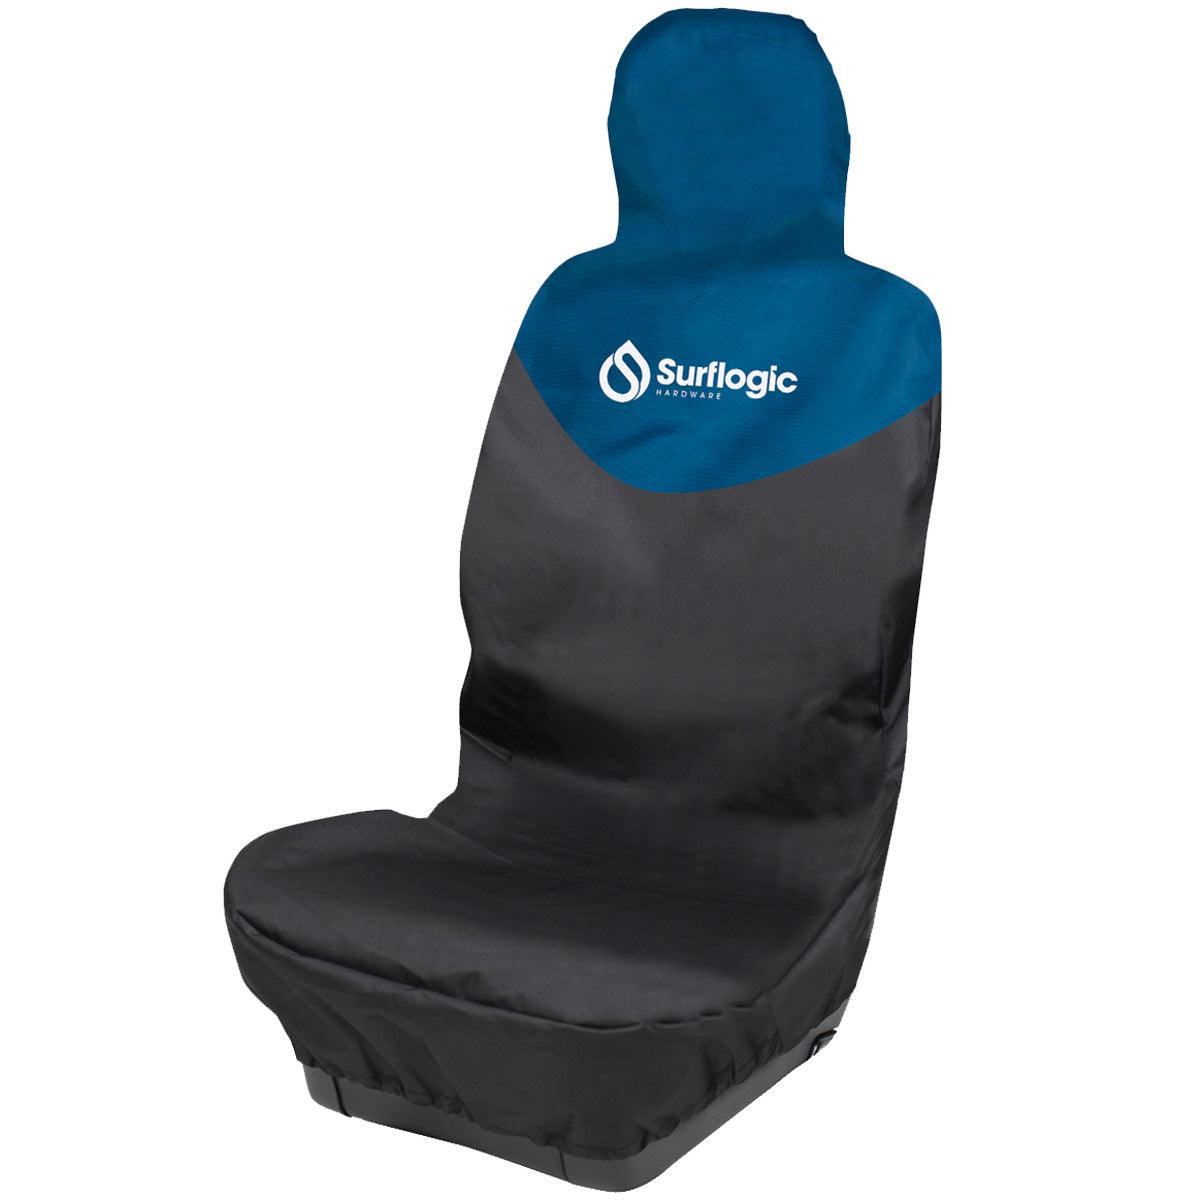 Surflogic Car Seat Cover - Kiteshop.com